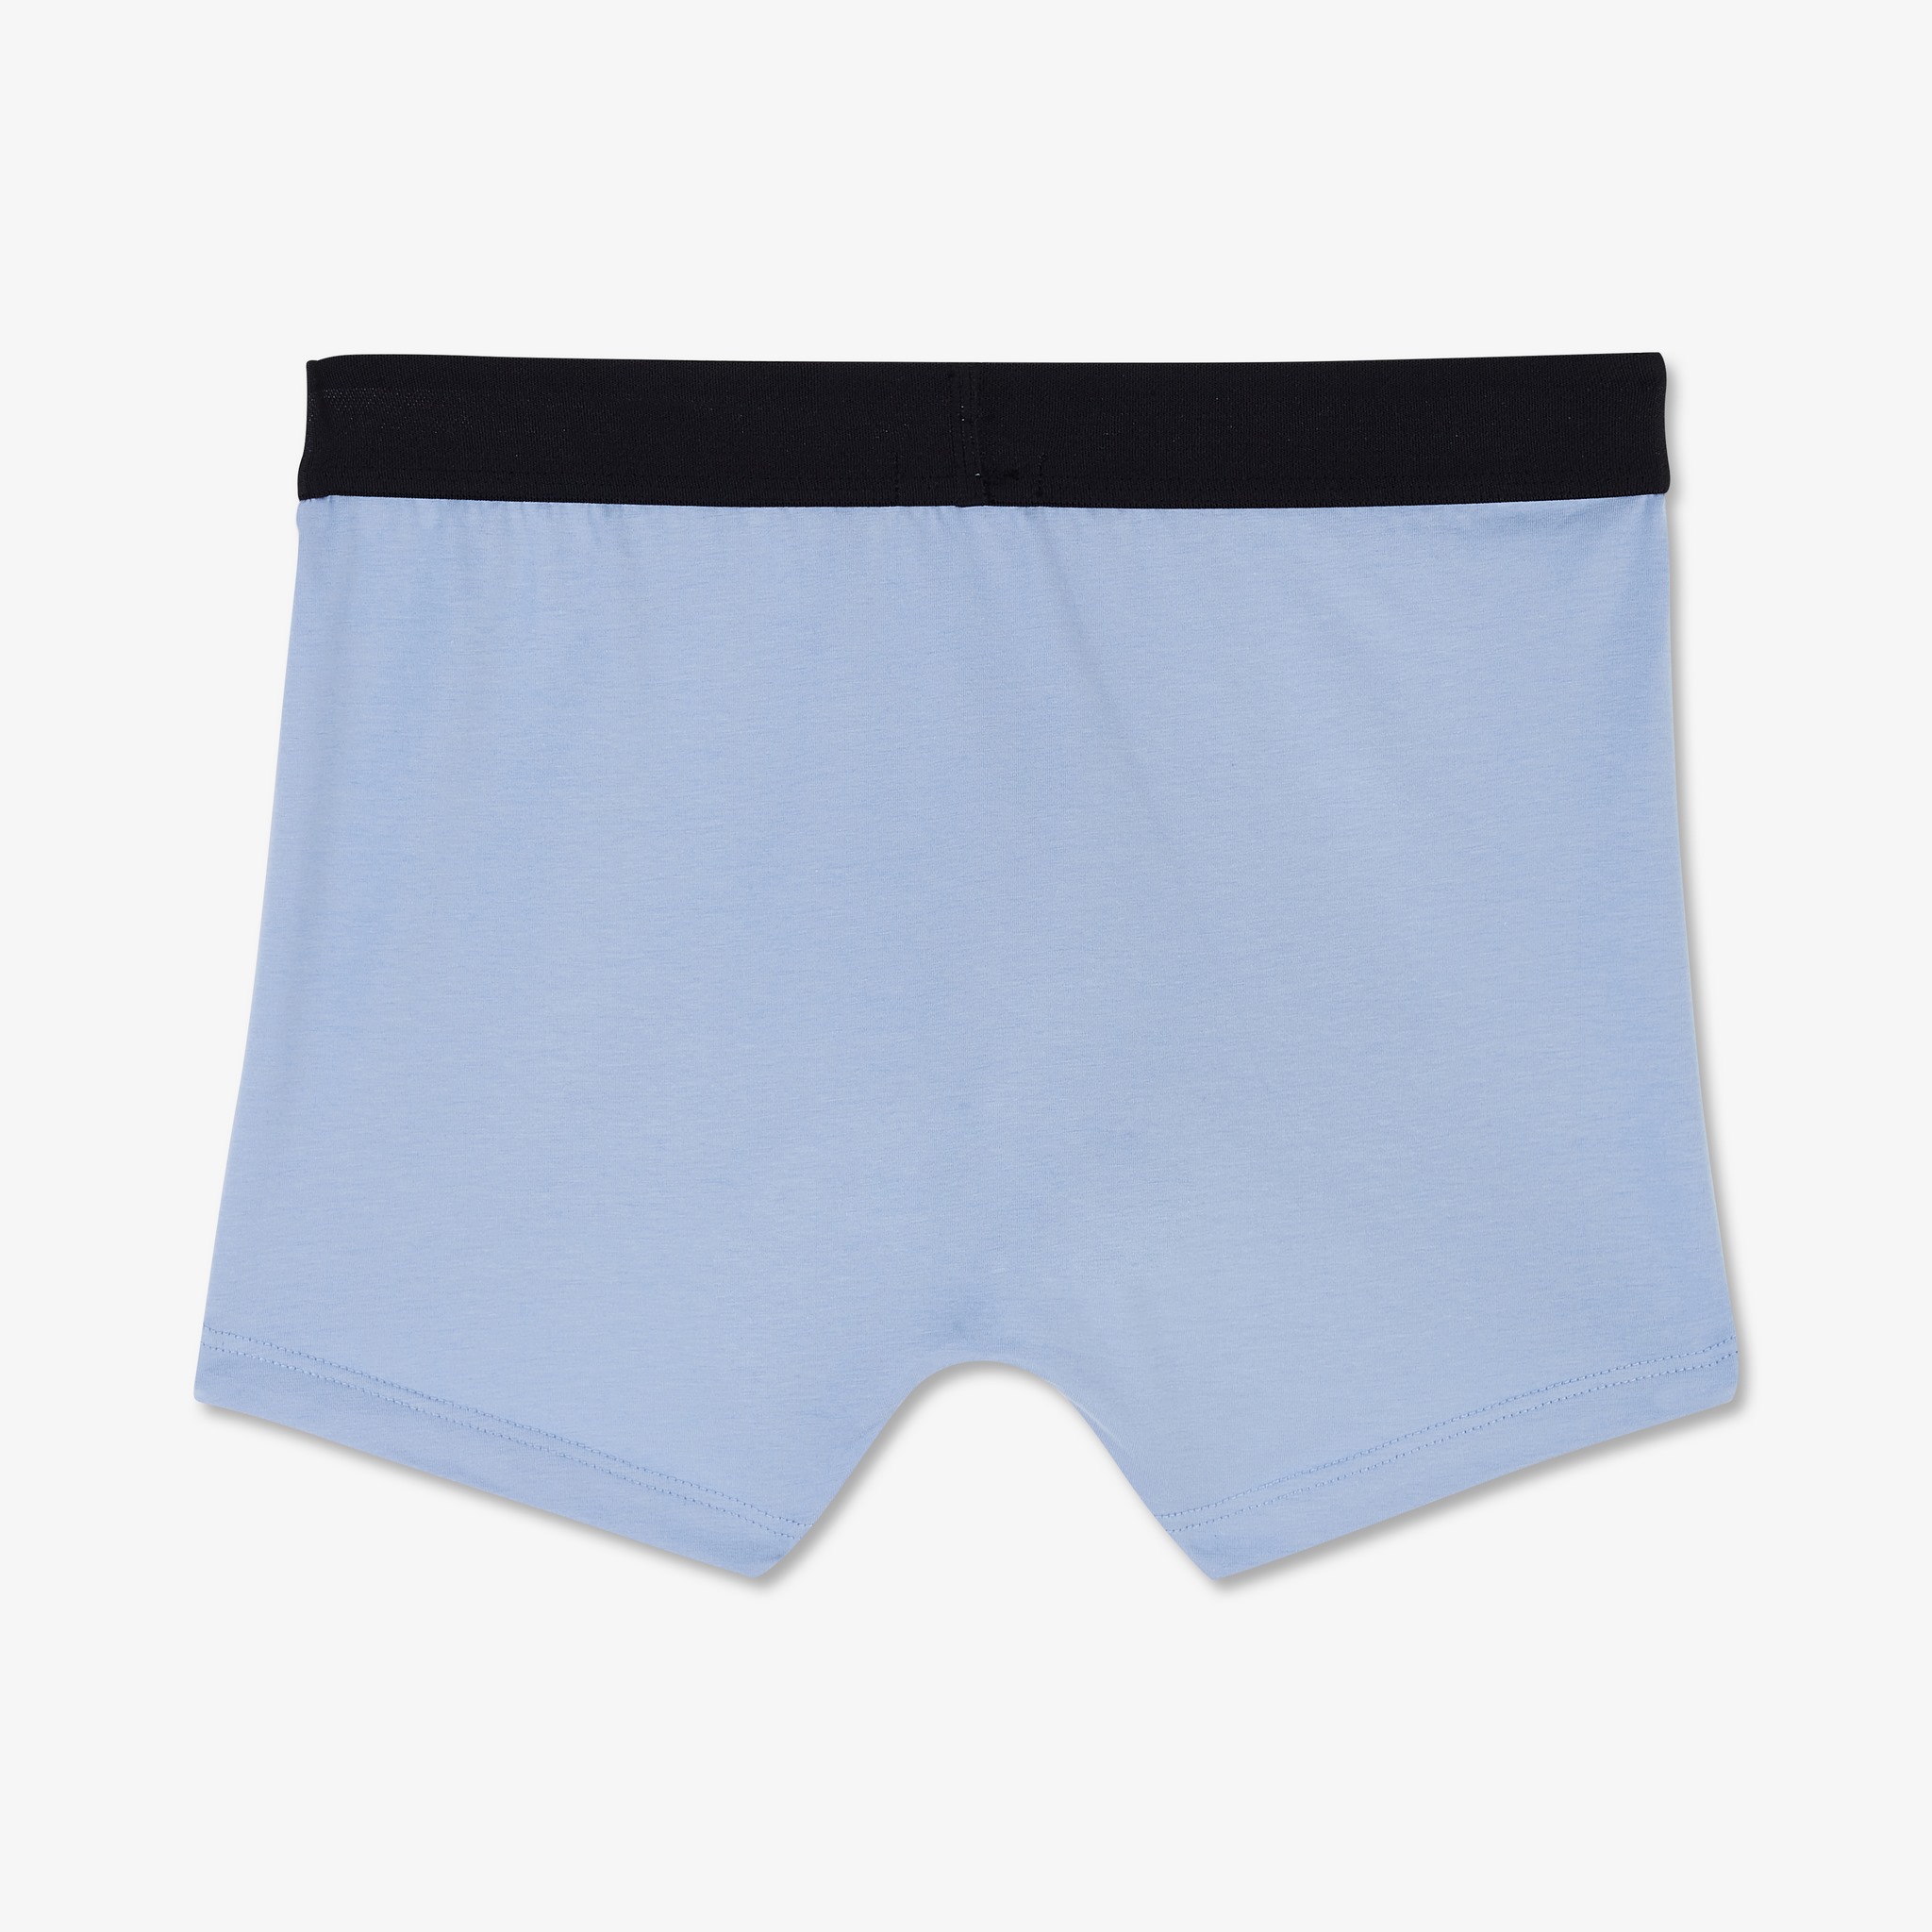 Underwear – Eden Park